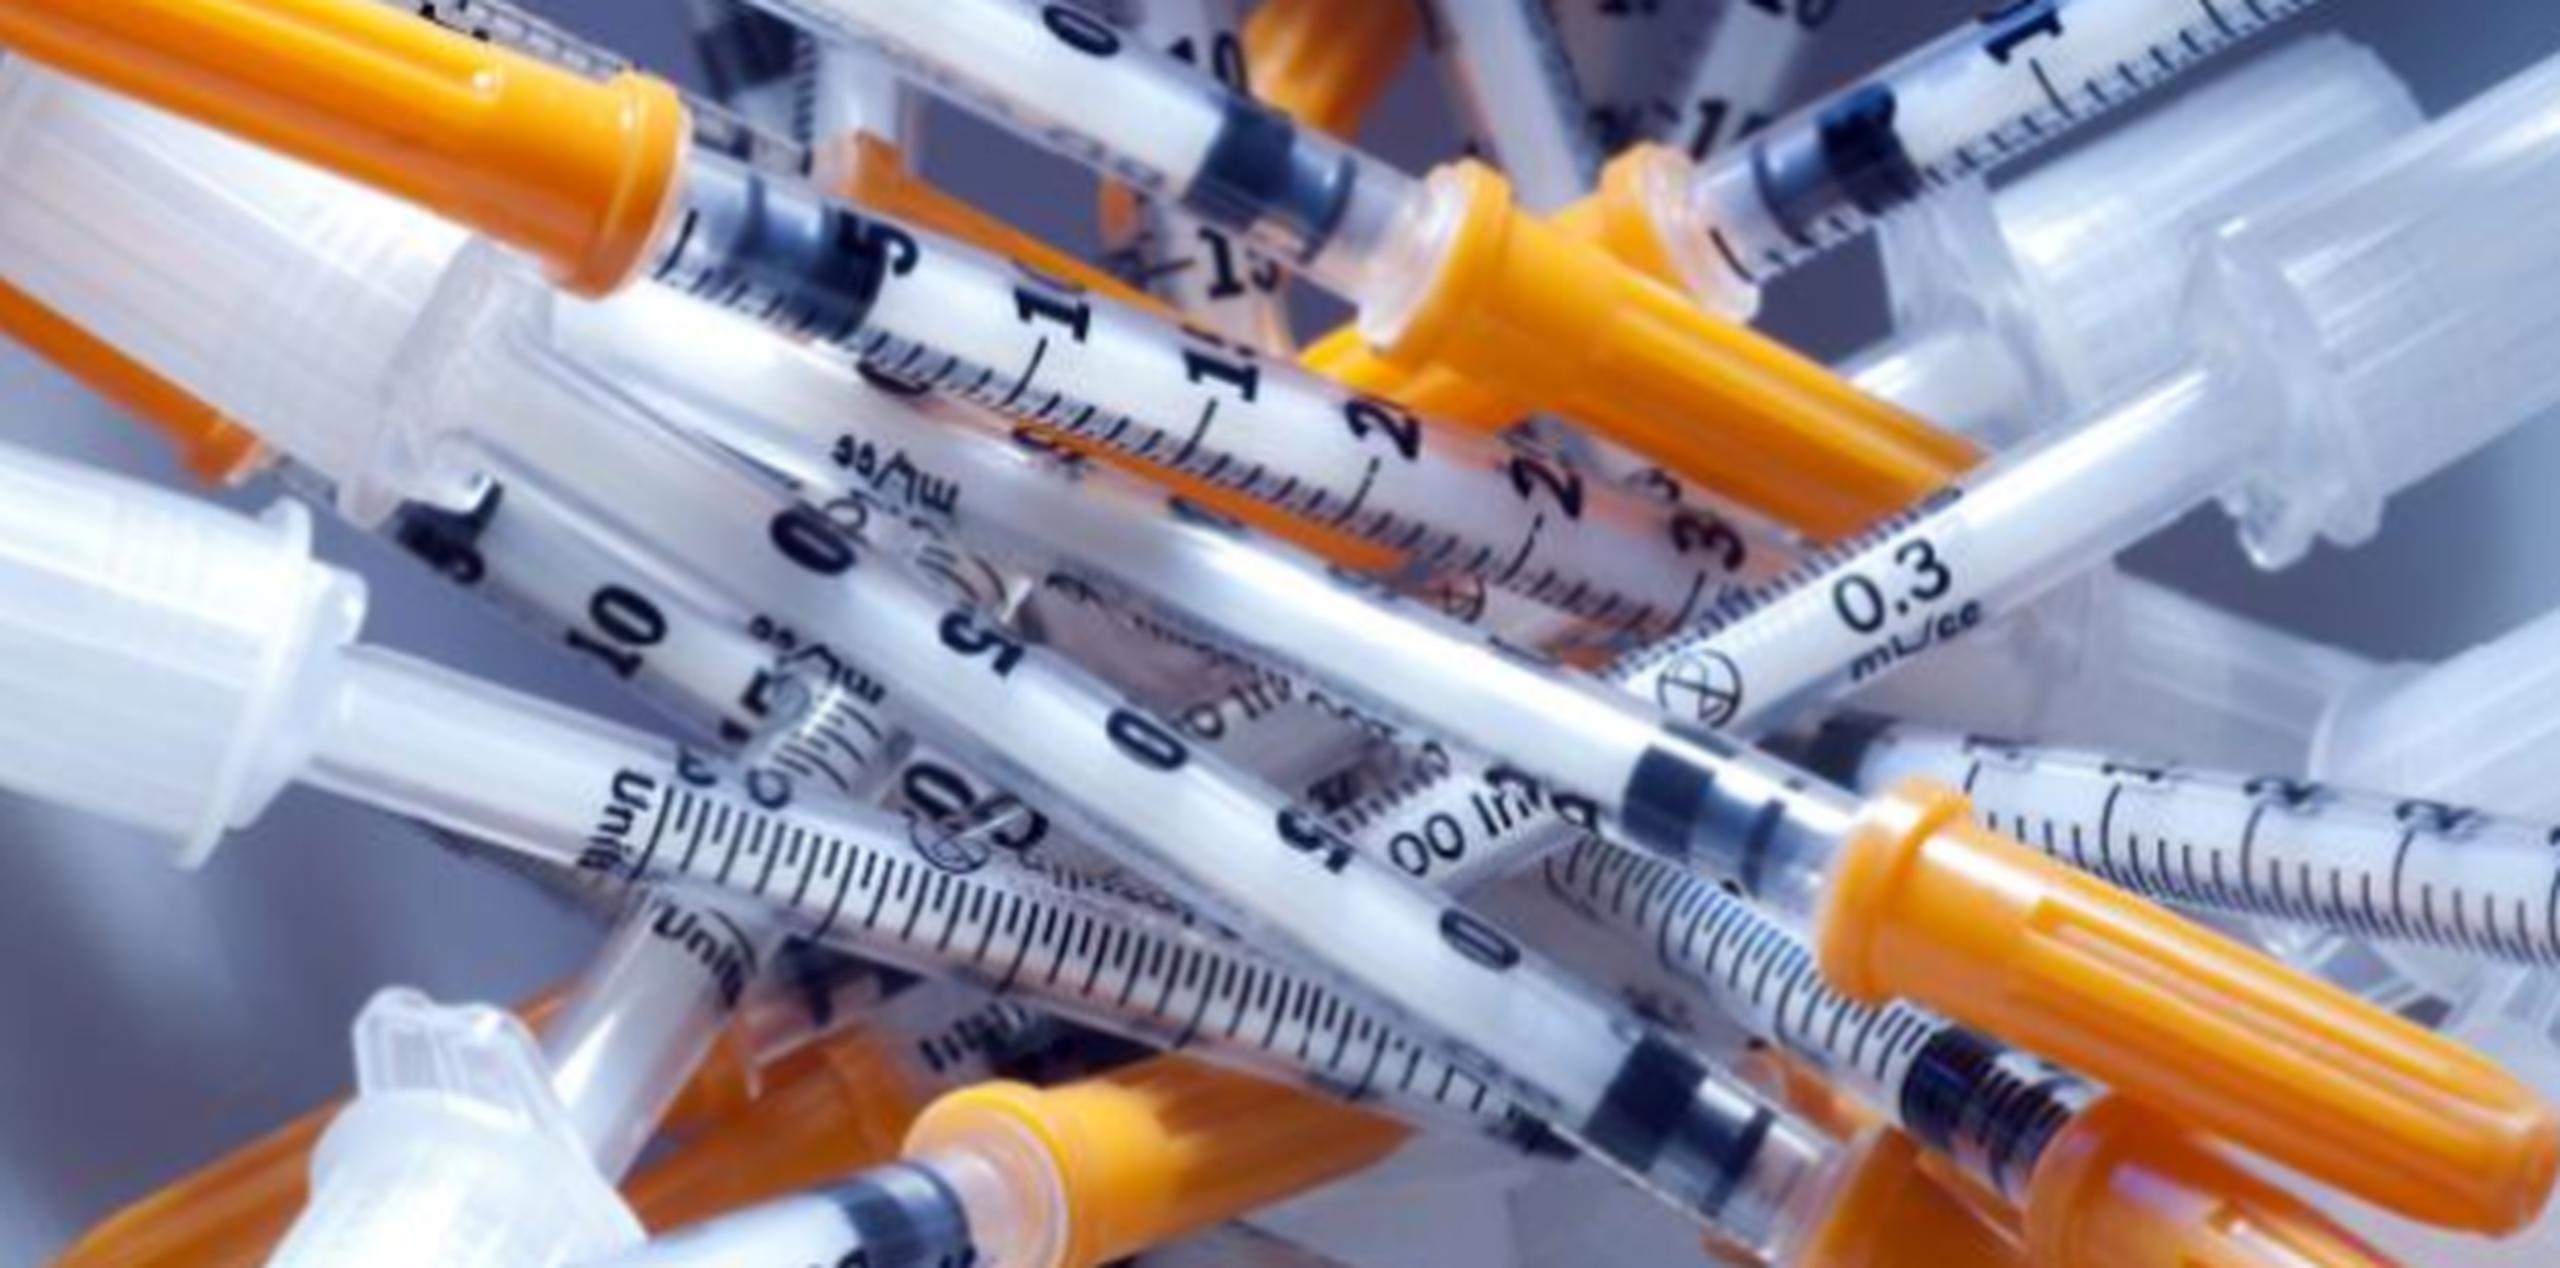 El problema crece en Nueva Hampshire y Massachusetts, dos estados que han sufrido muchas muertes por sobredosis en los últimos años.  (Archivo)